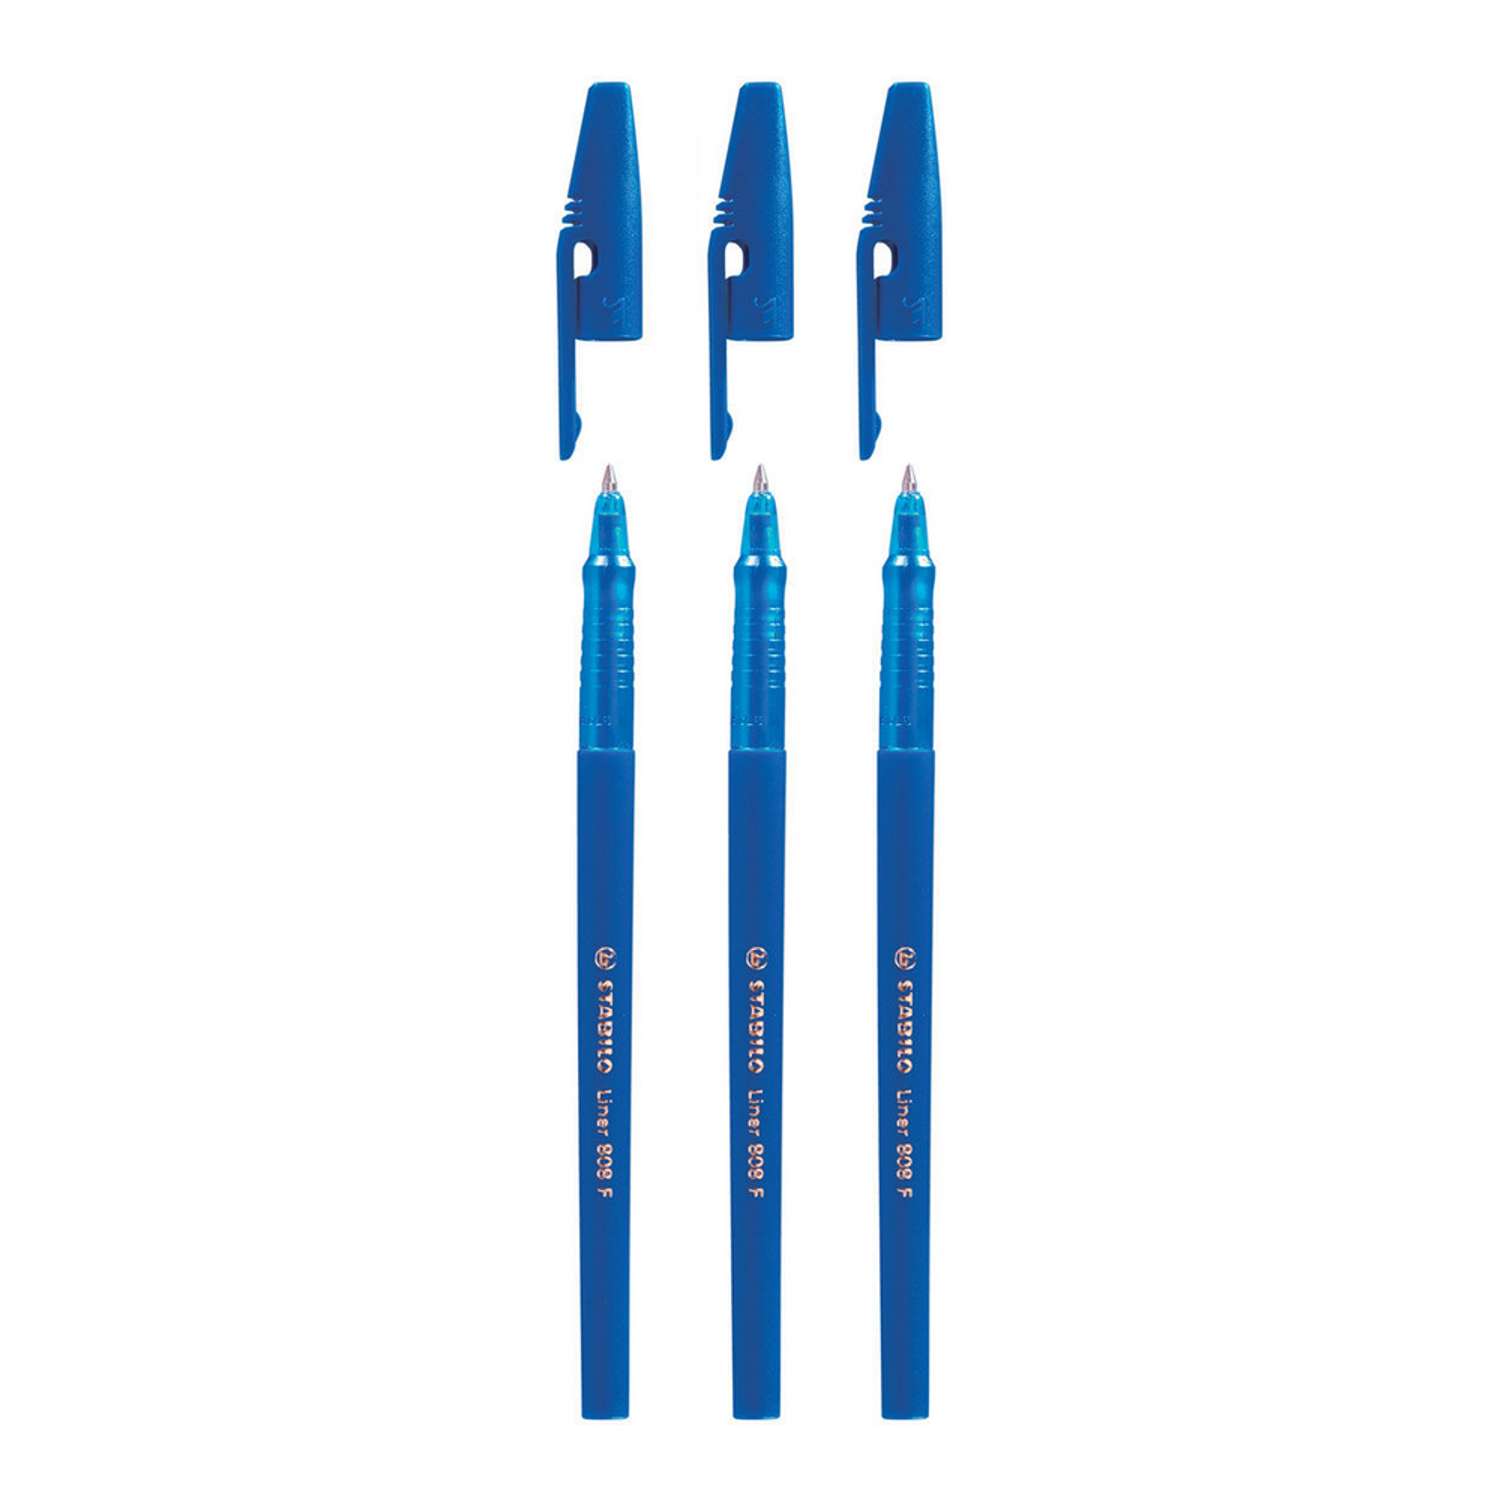 Ручка шариковая STABILO liner 808 3 шт линия 0.38мм синие масляные чернила 808/41-3B - фото 1